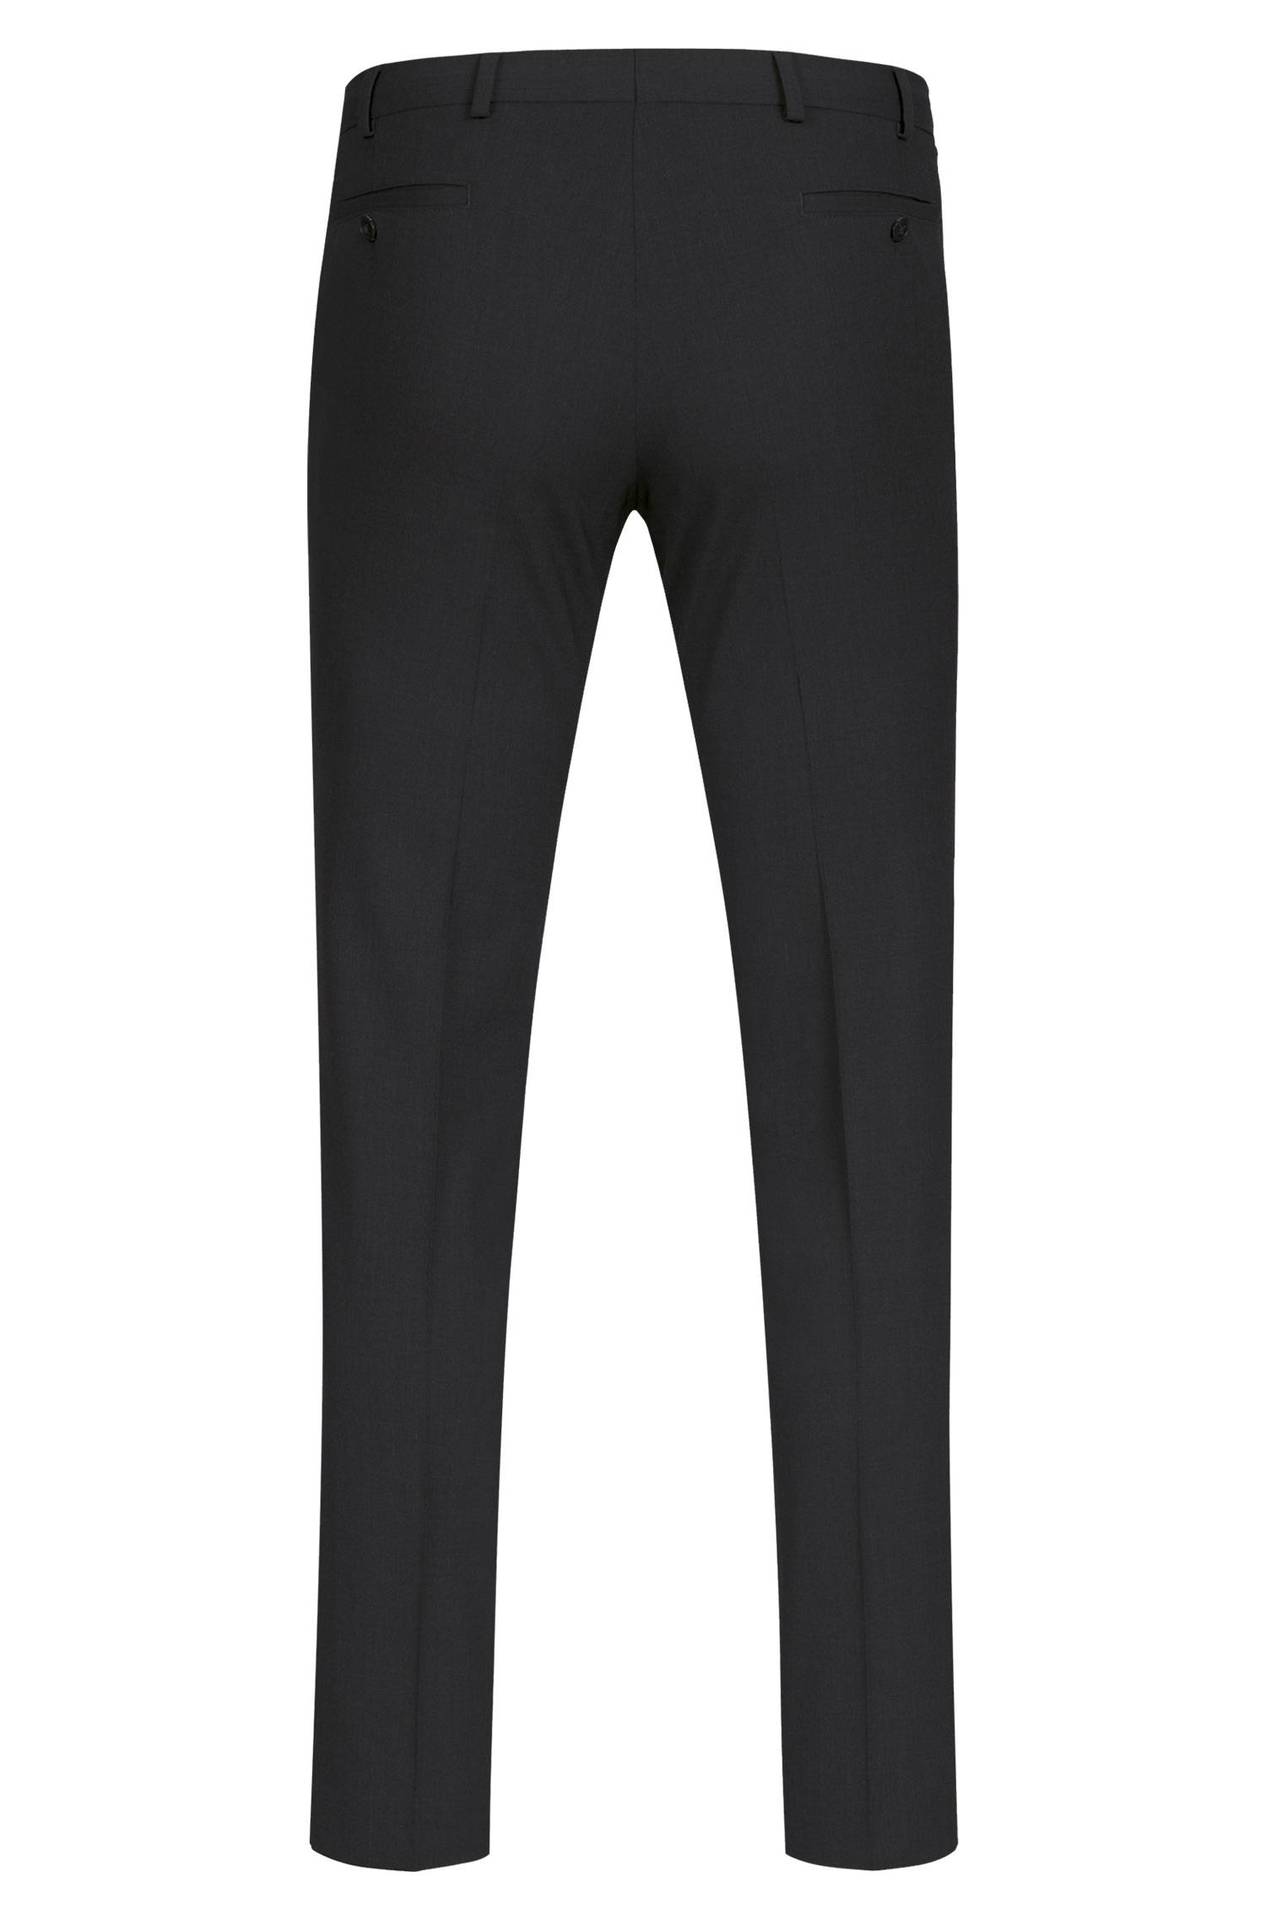 Men's trousers PREMIUM slim fit - Color: Black | Size: 54